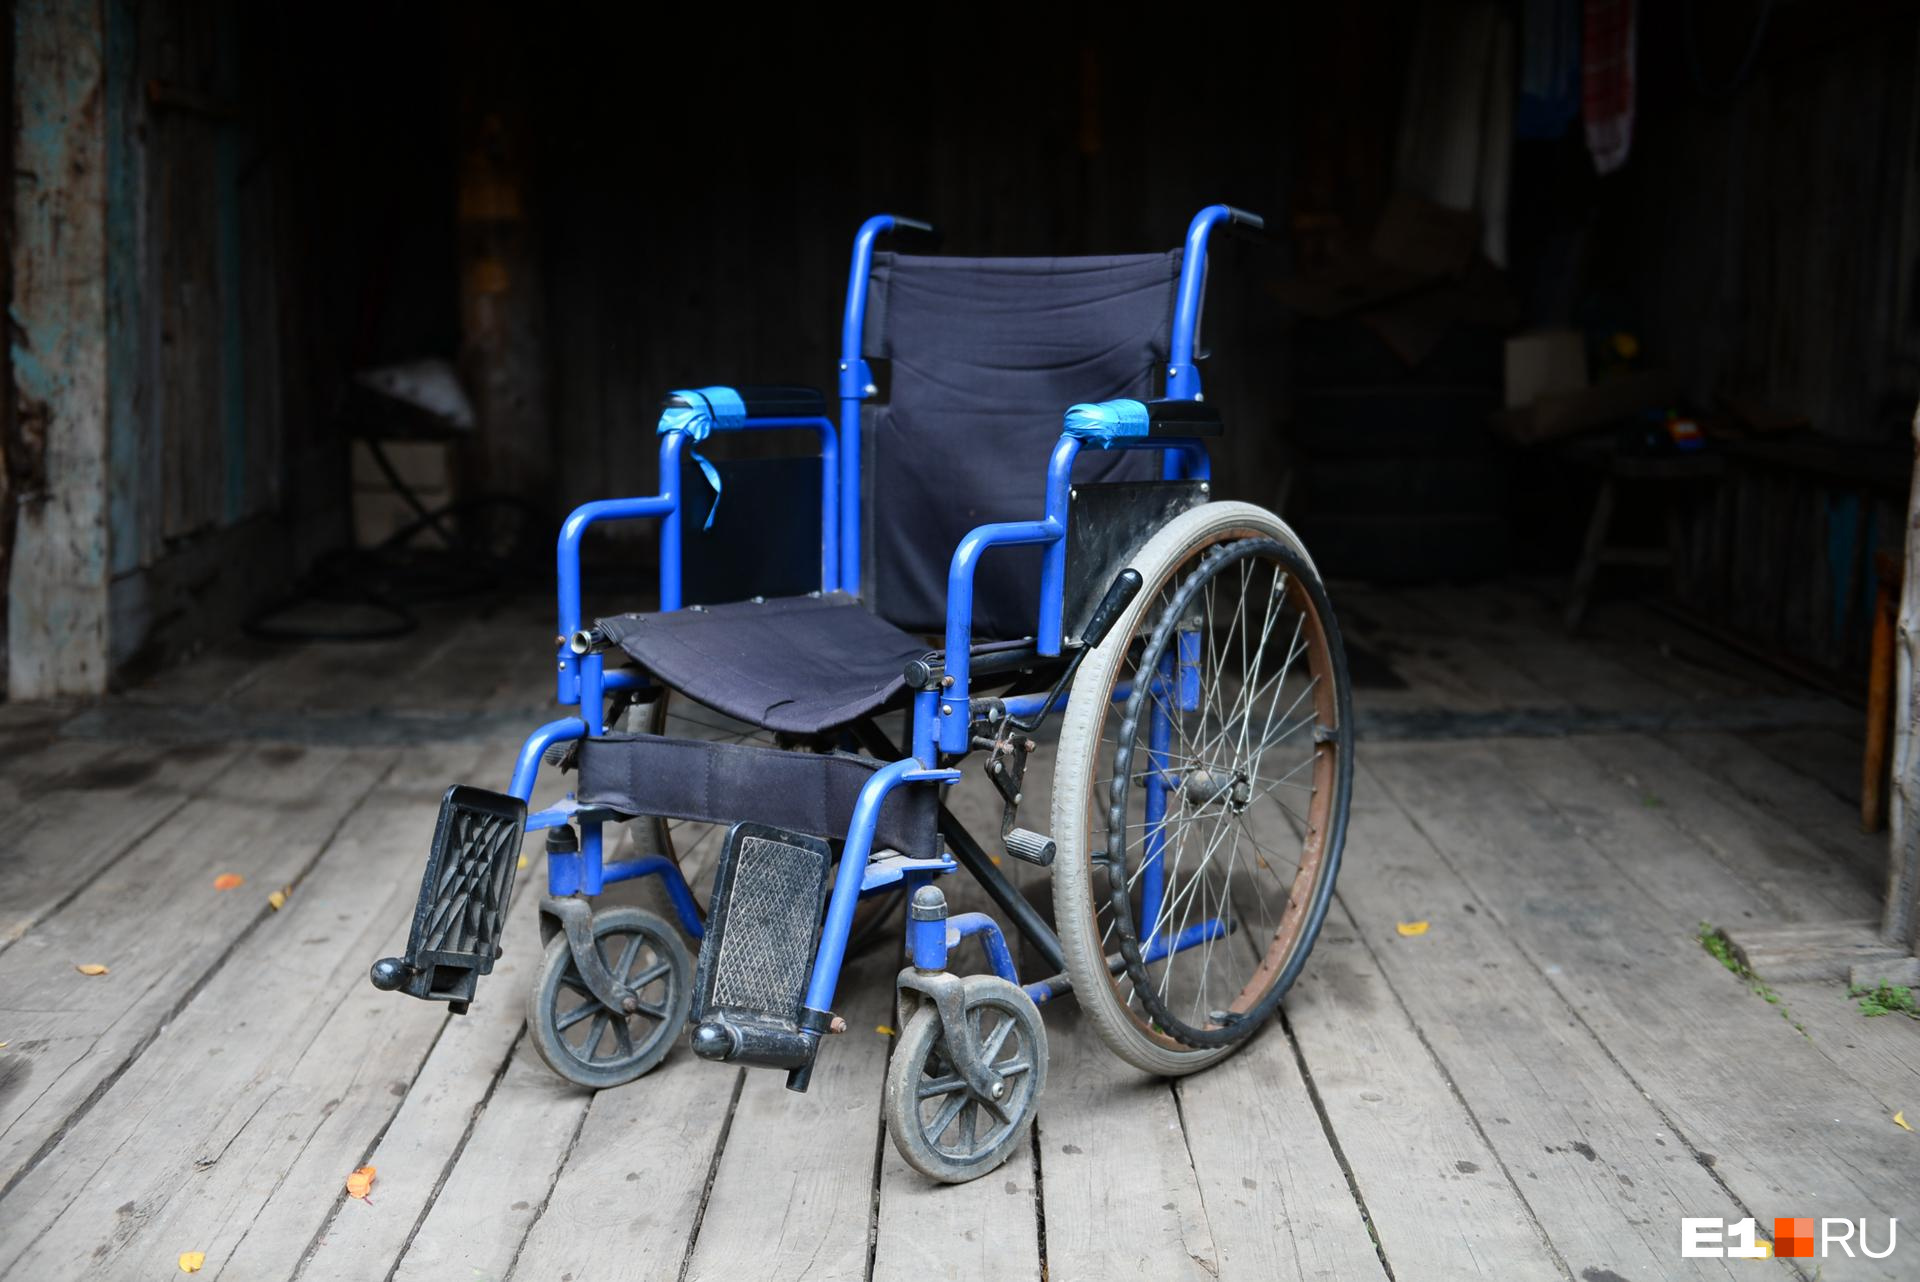 Бастрыкин заинтересовался историей инвалида-колясочника из Читы